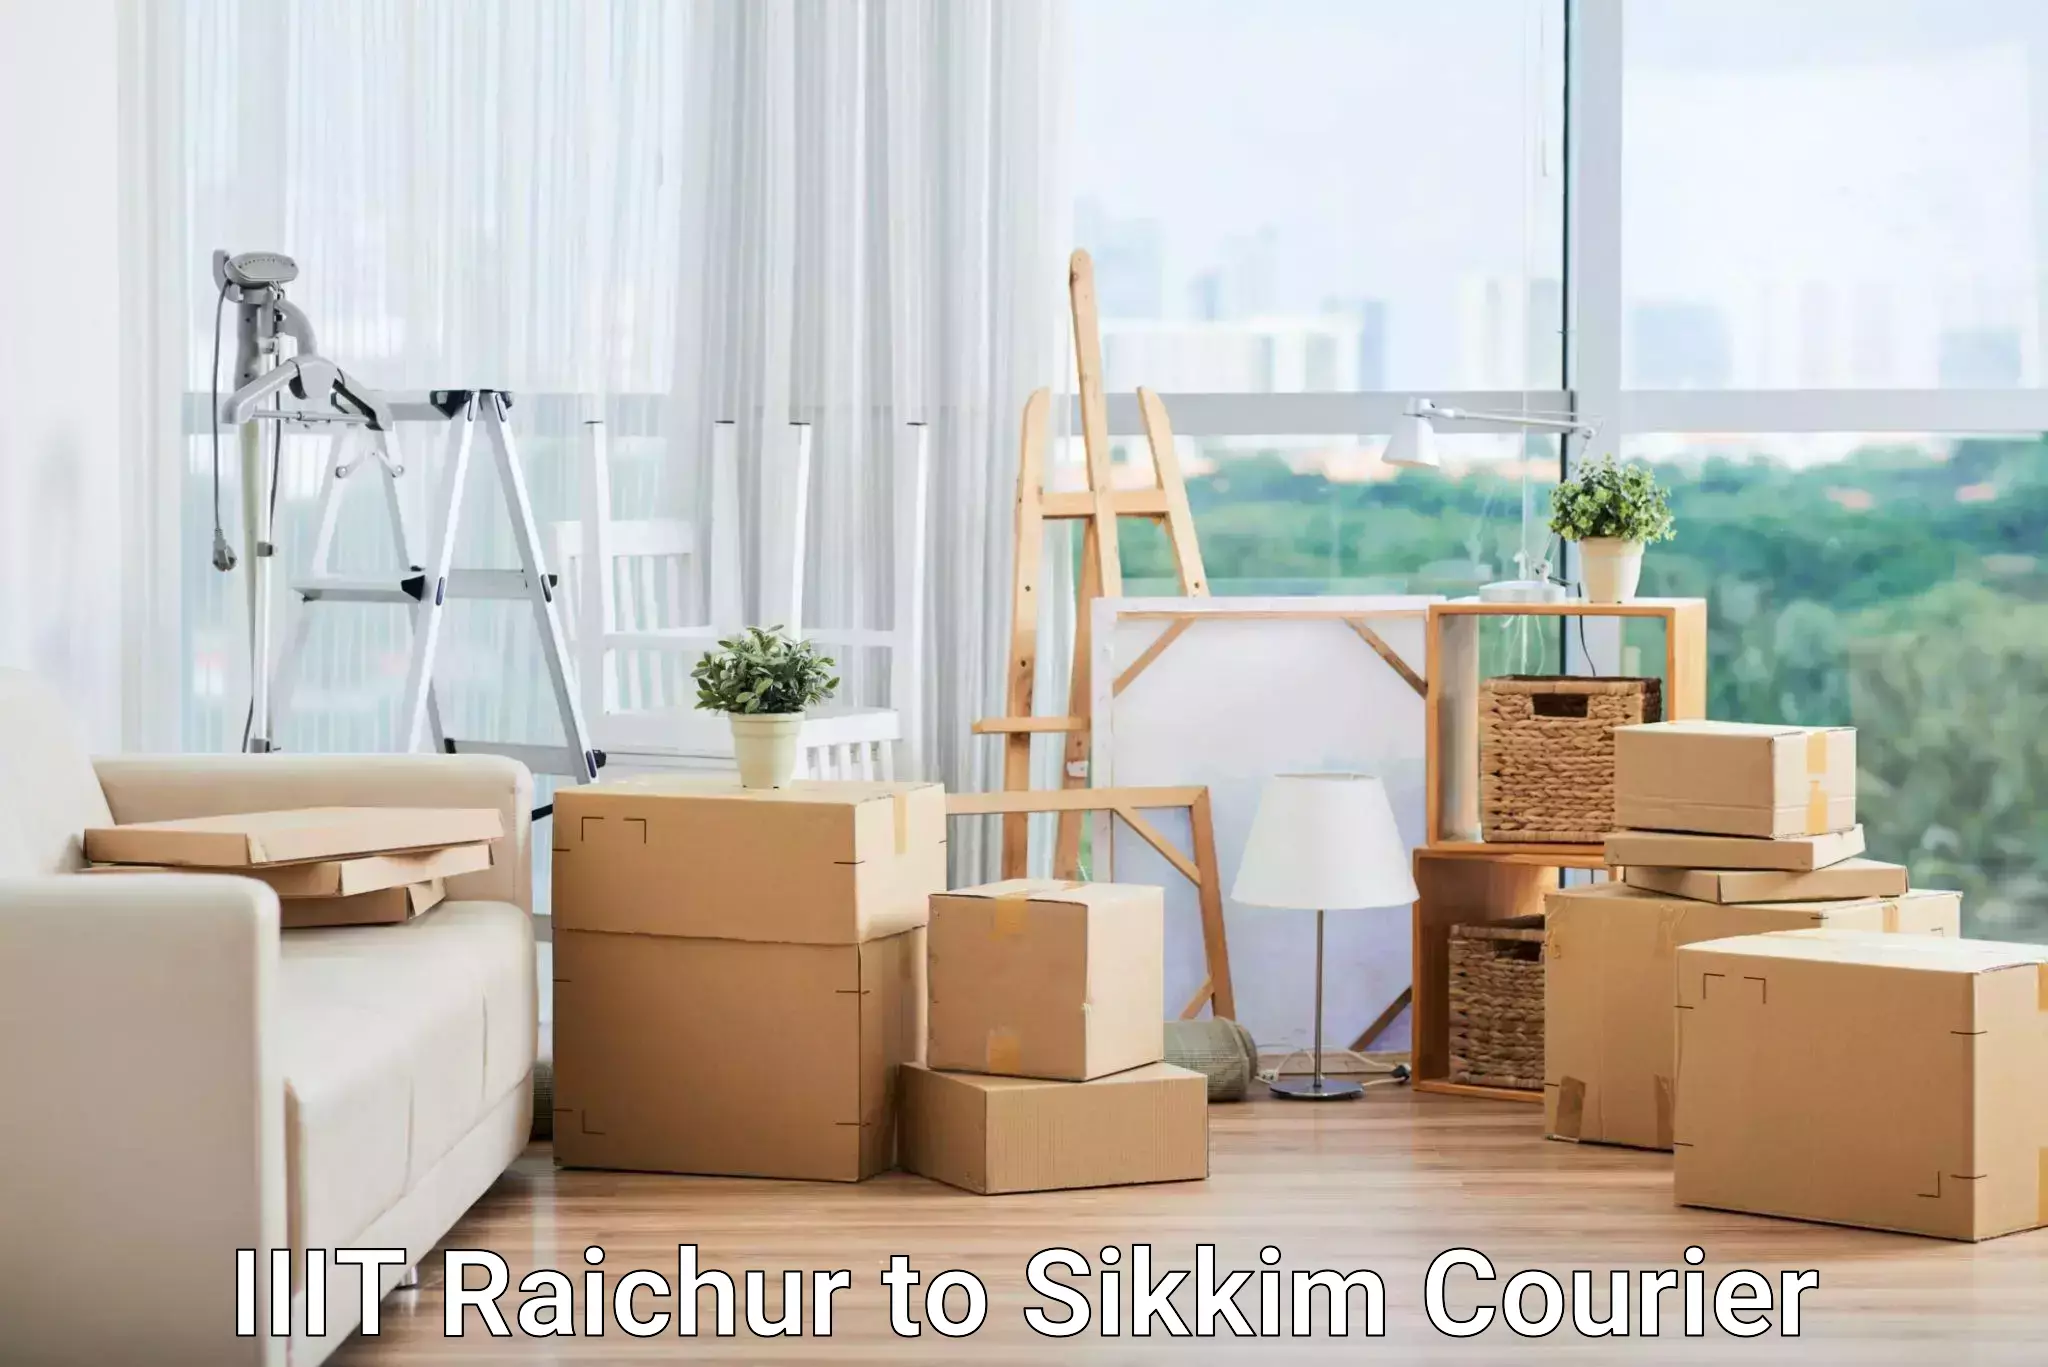 Smart parcel delivery IIIT Raichur to Sikkim